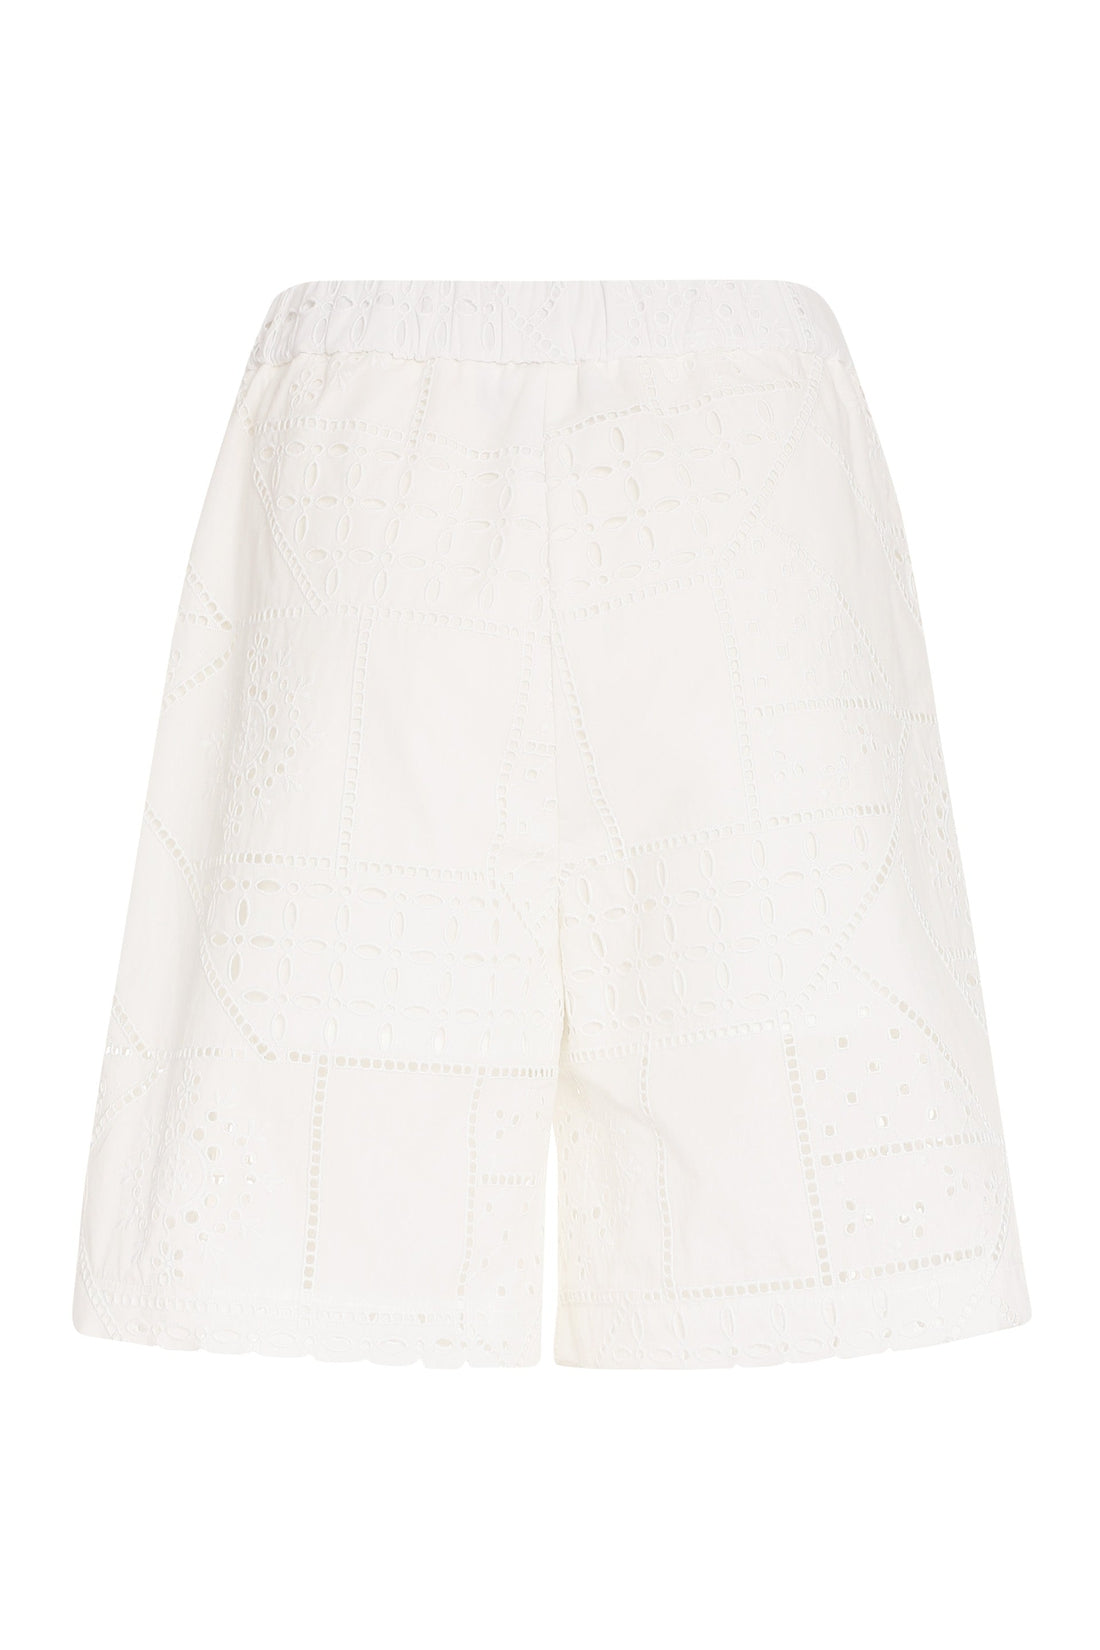 MSGM-OUTLET-SALE-Lace shorts-ARCHIVIST